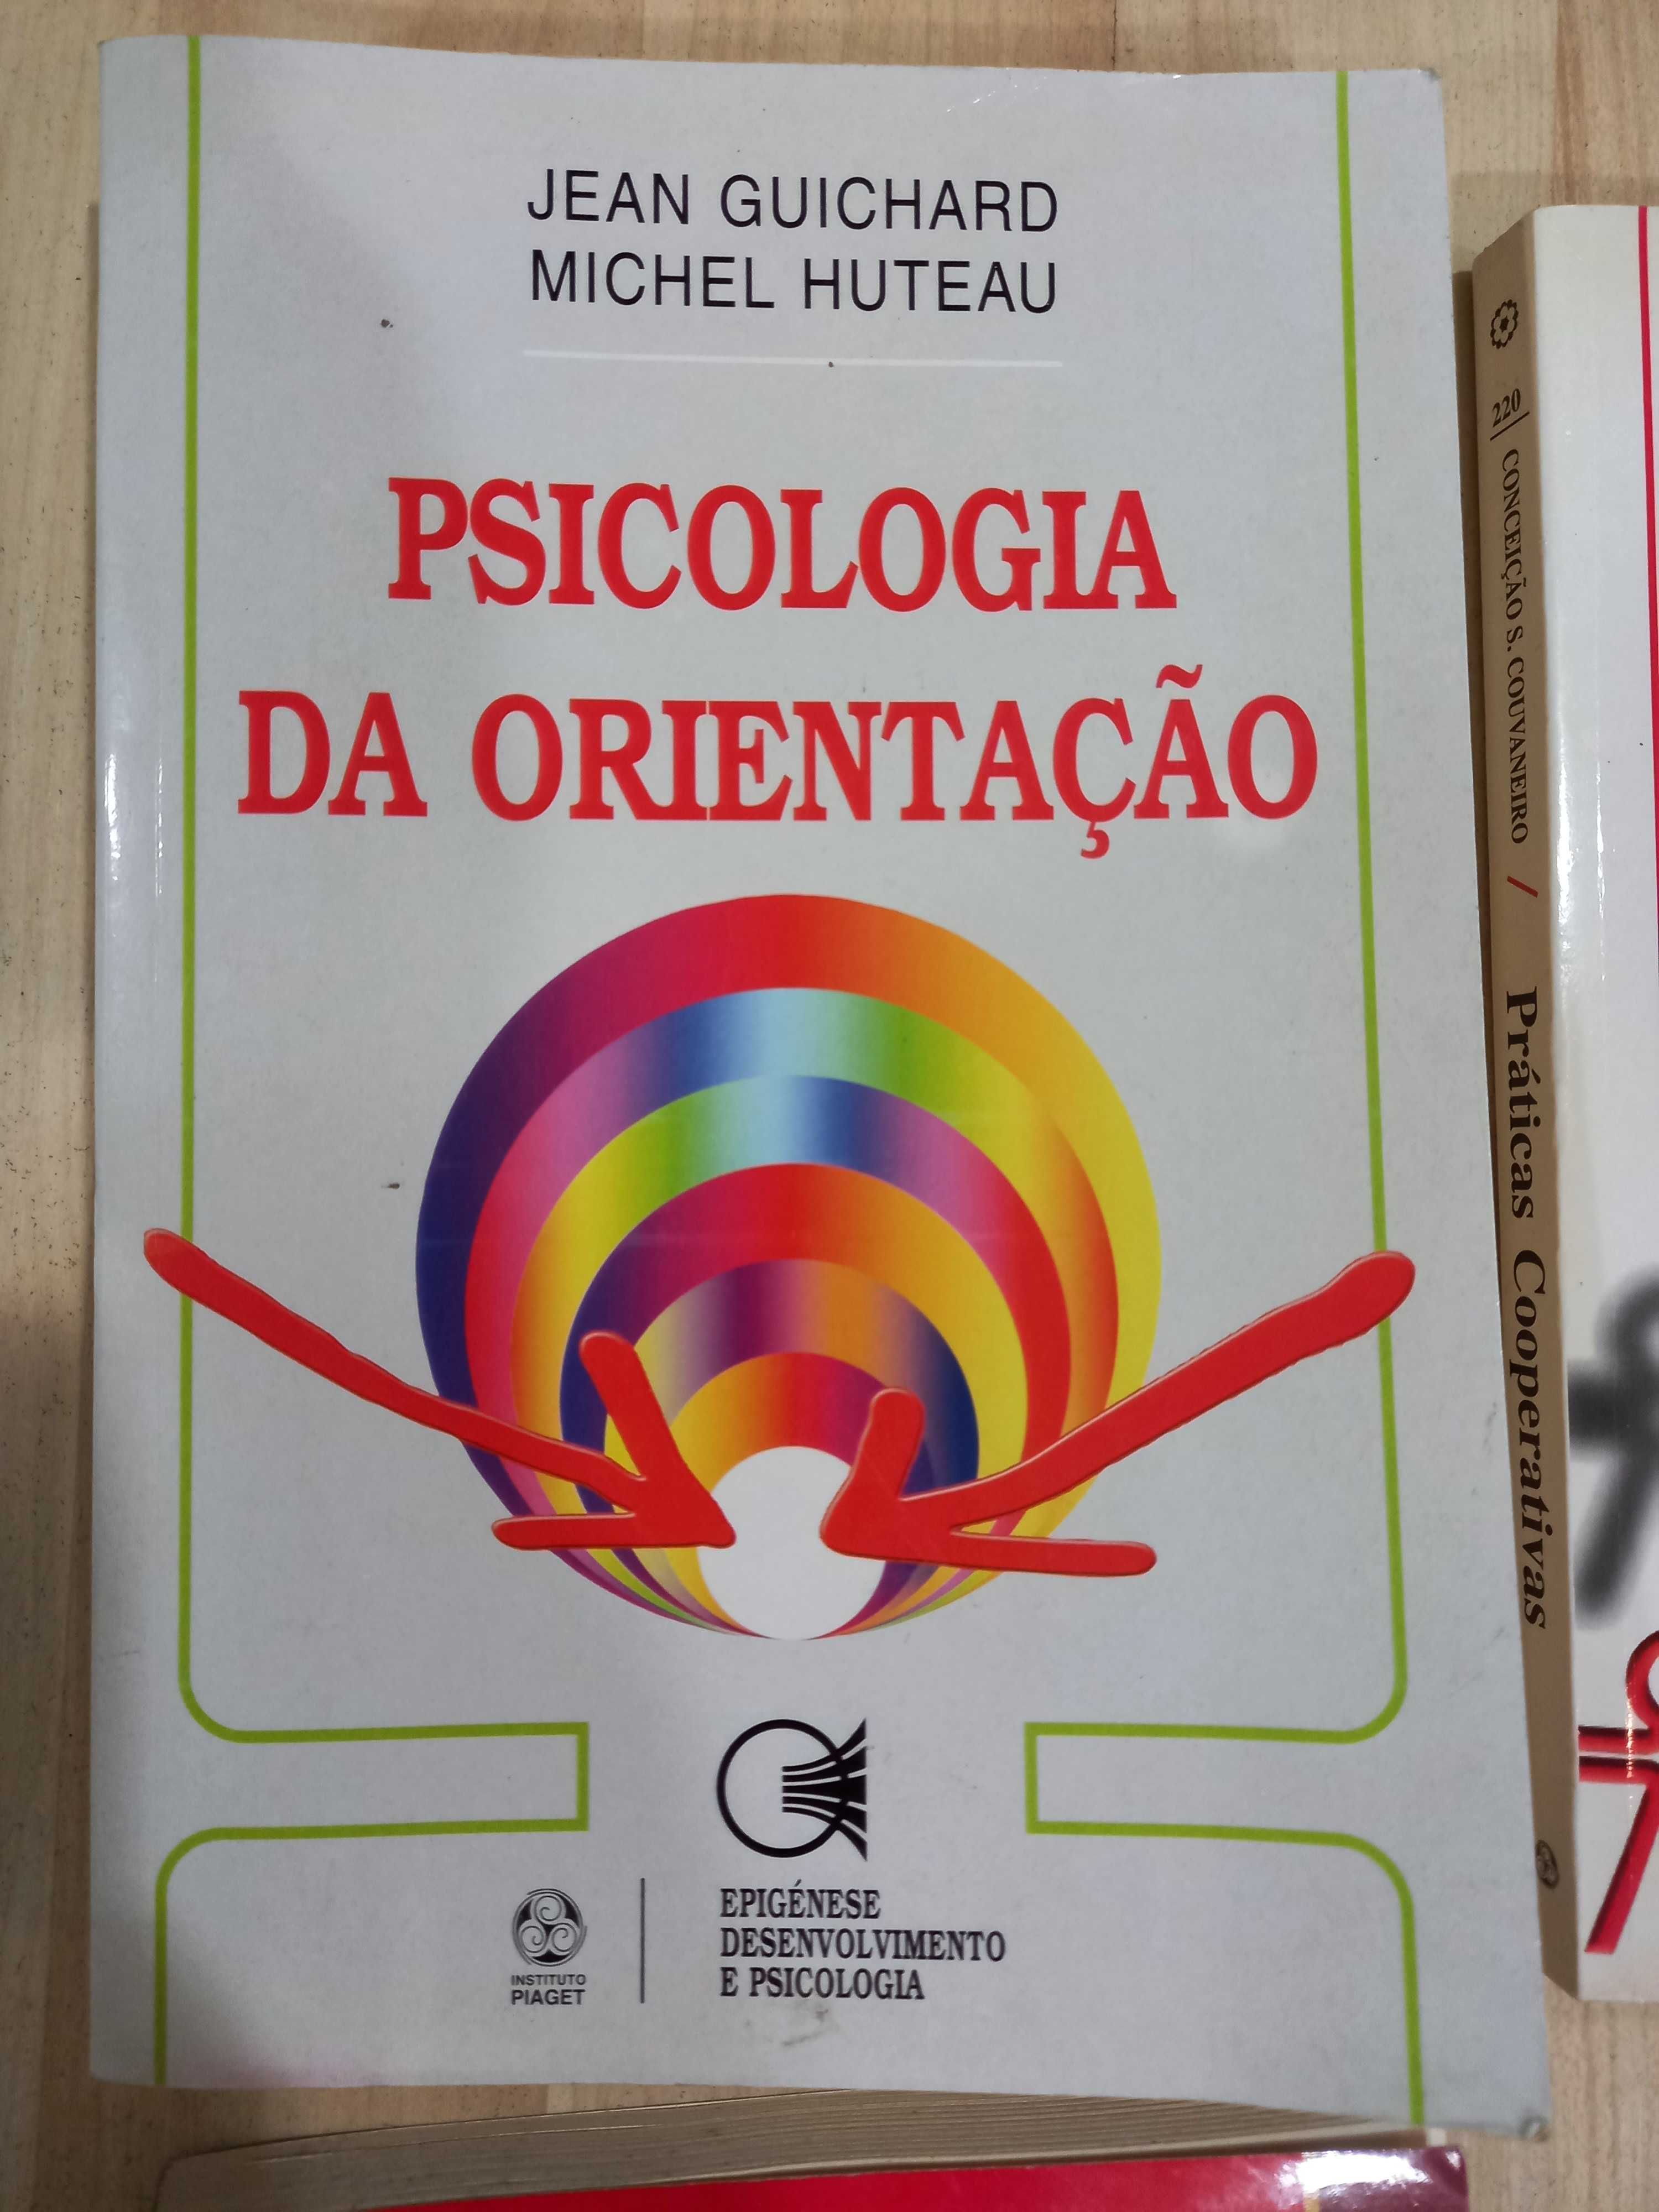 Livros de Psicologia